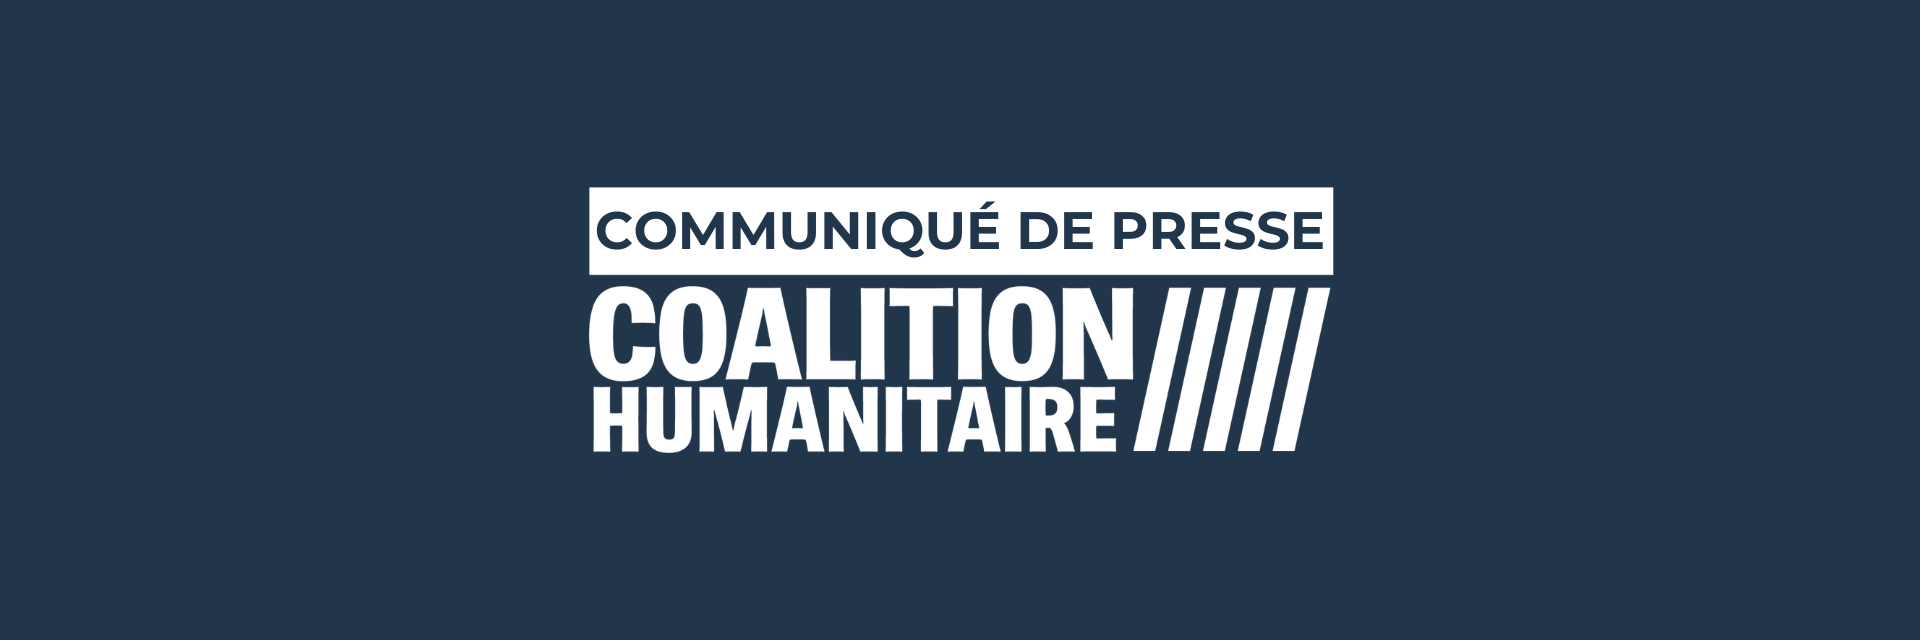 communique de presse - coalition humanitaire